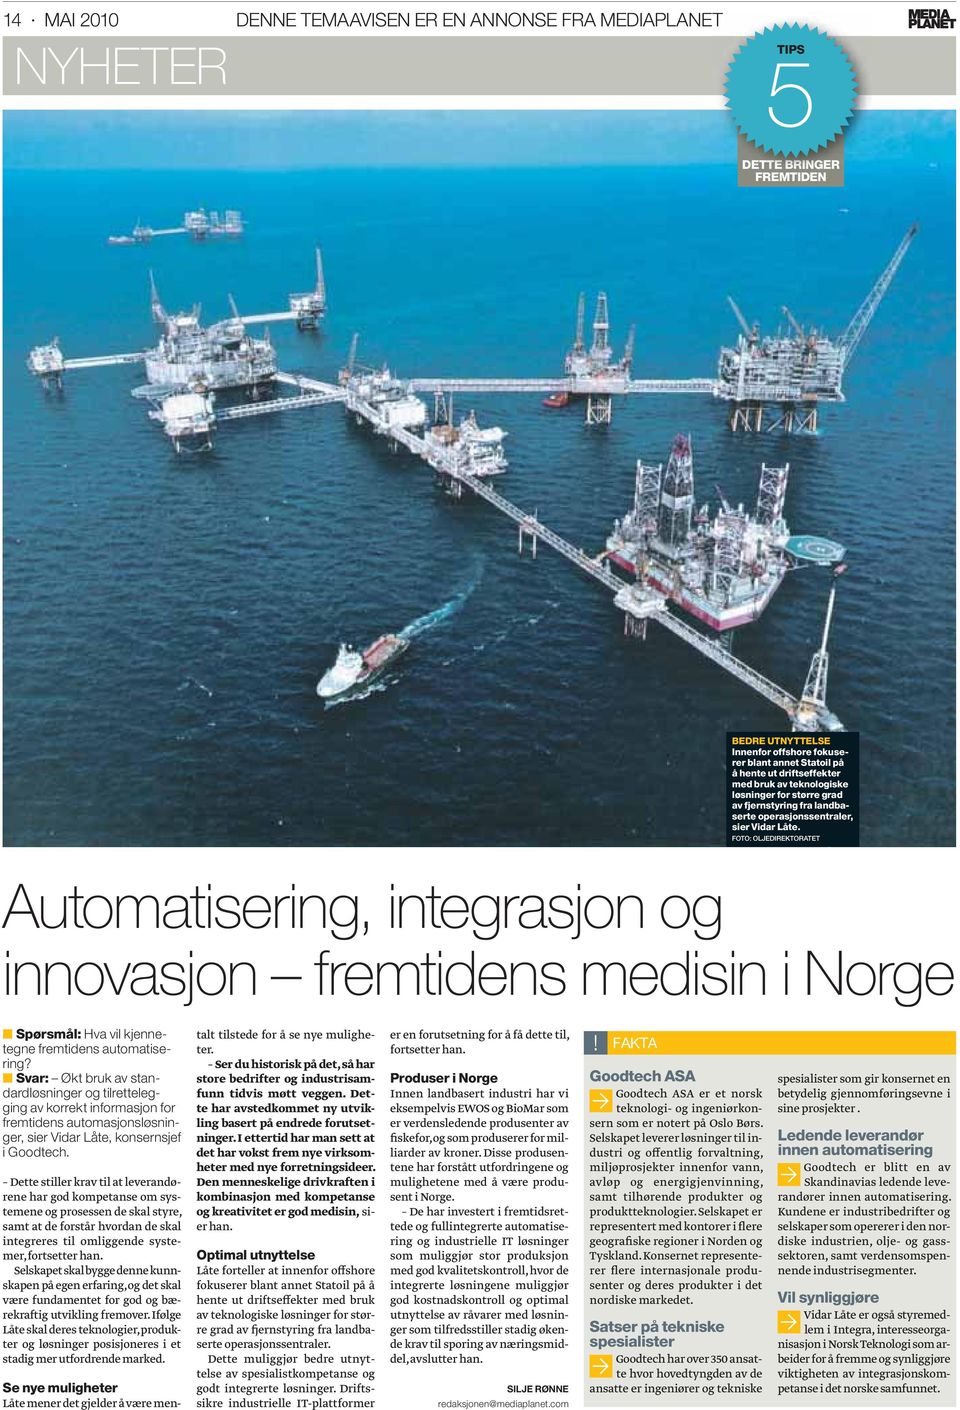 FOTO: OLJEDIREKTORATET Automatisering, integrasjon og innovasjon fremtidens medisin i Norge Spørsmål: Hva vil kjennetegne fremtidens automatisering?